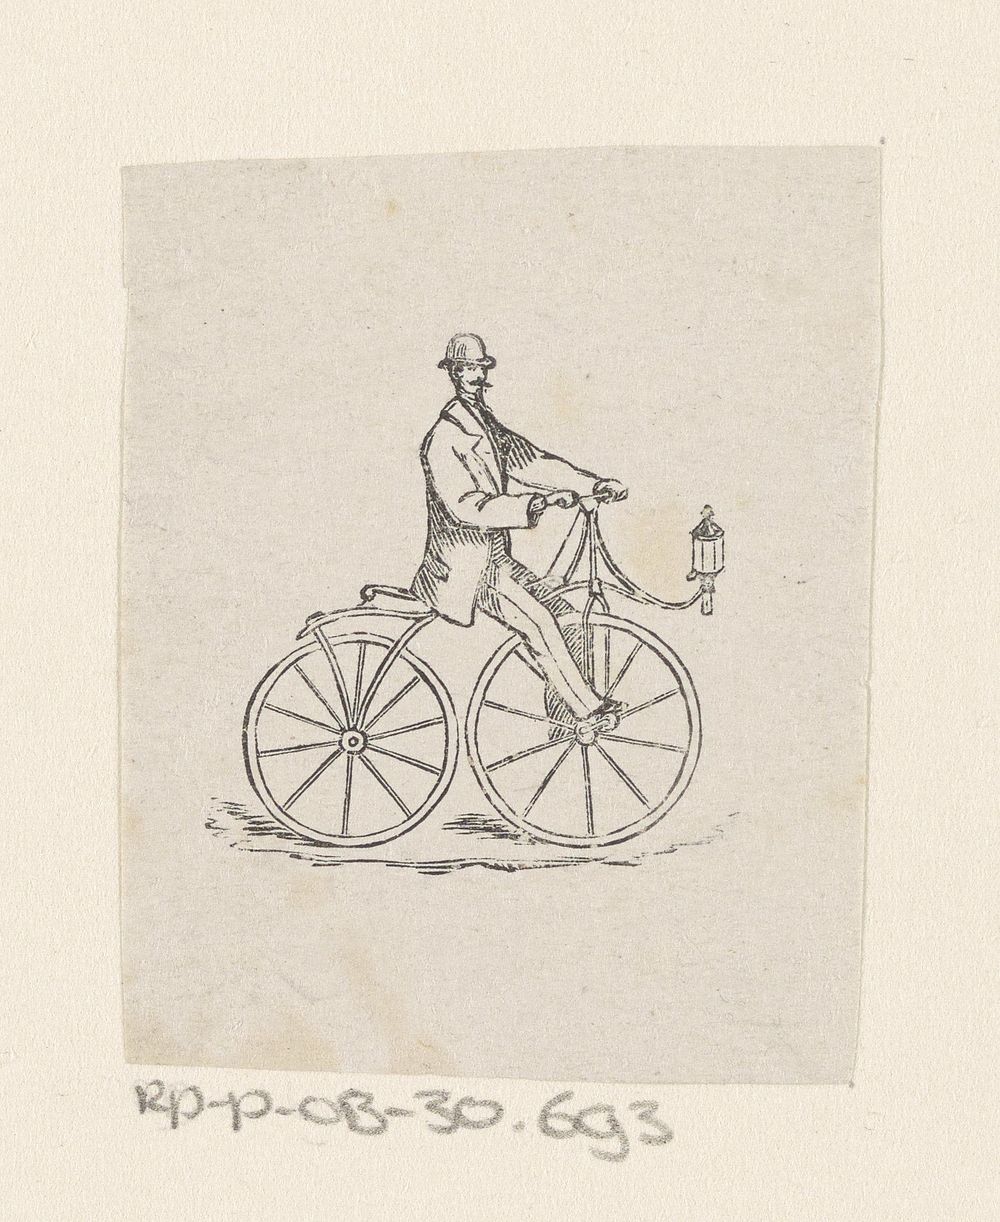 Man met een bolhoed op een fiets (c. 1869) by Isaac Weissenbruch